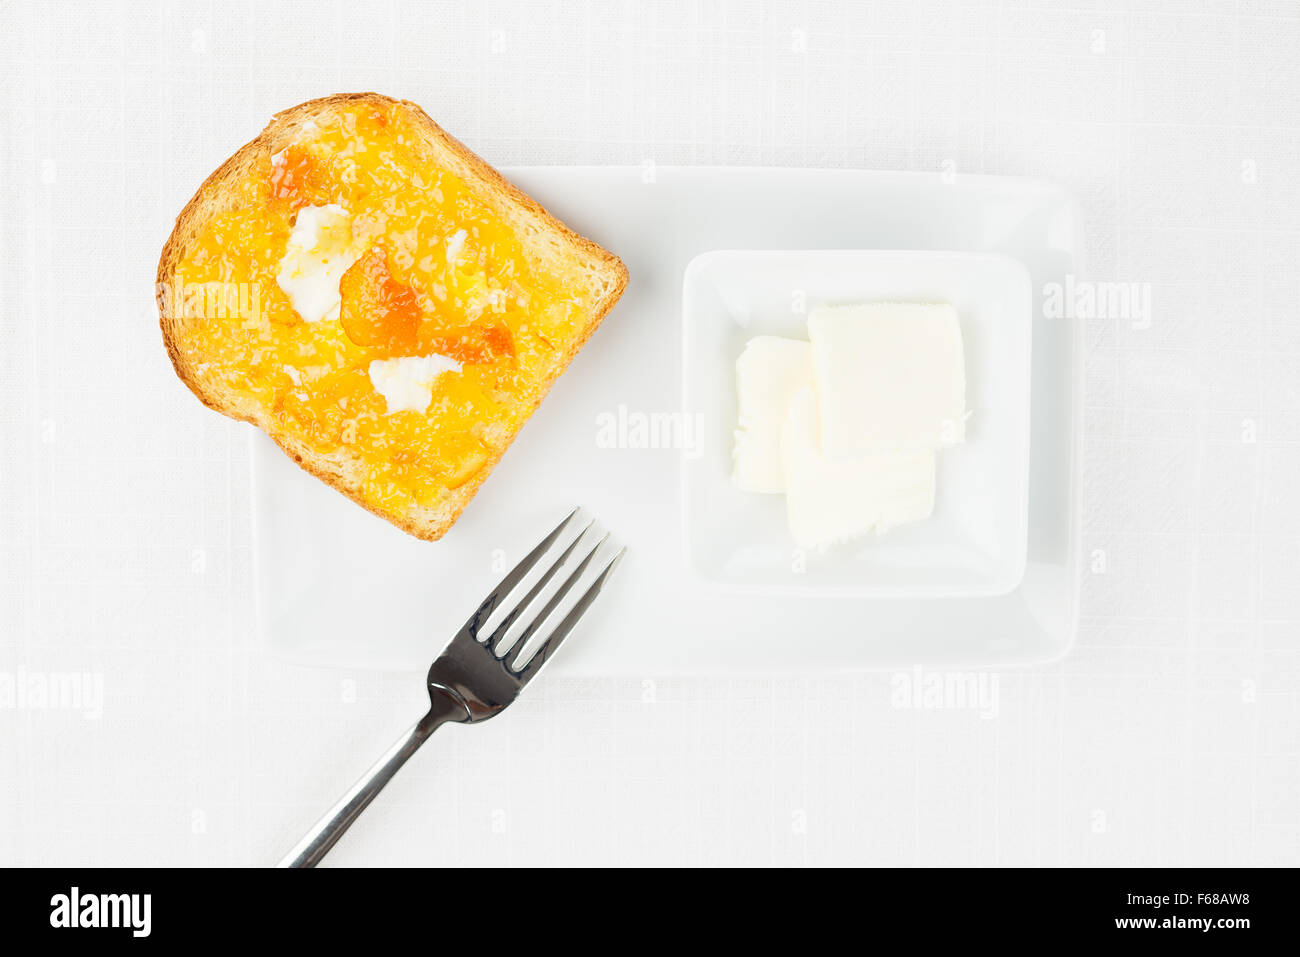 Toast alla francese con diffusione di arancia amara marmellata o confettura con frutta candita, riccioli di burro, forcella e stoviglie sulla tovaglia bianca Foto Stock